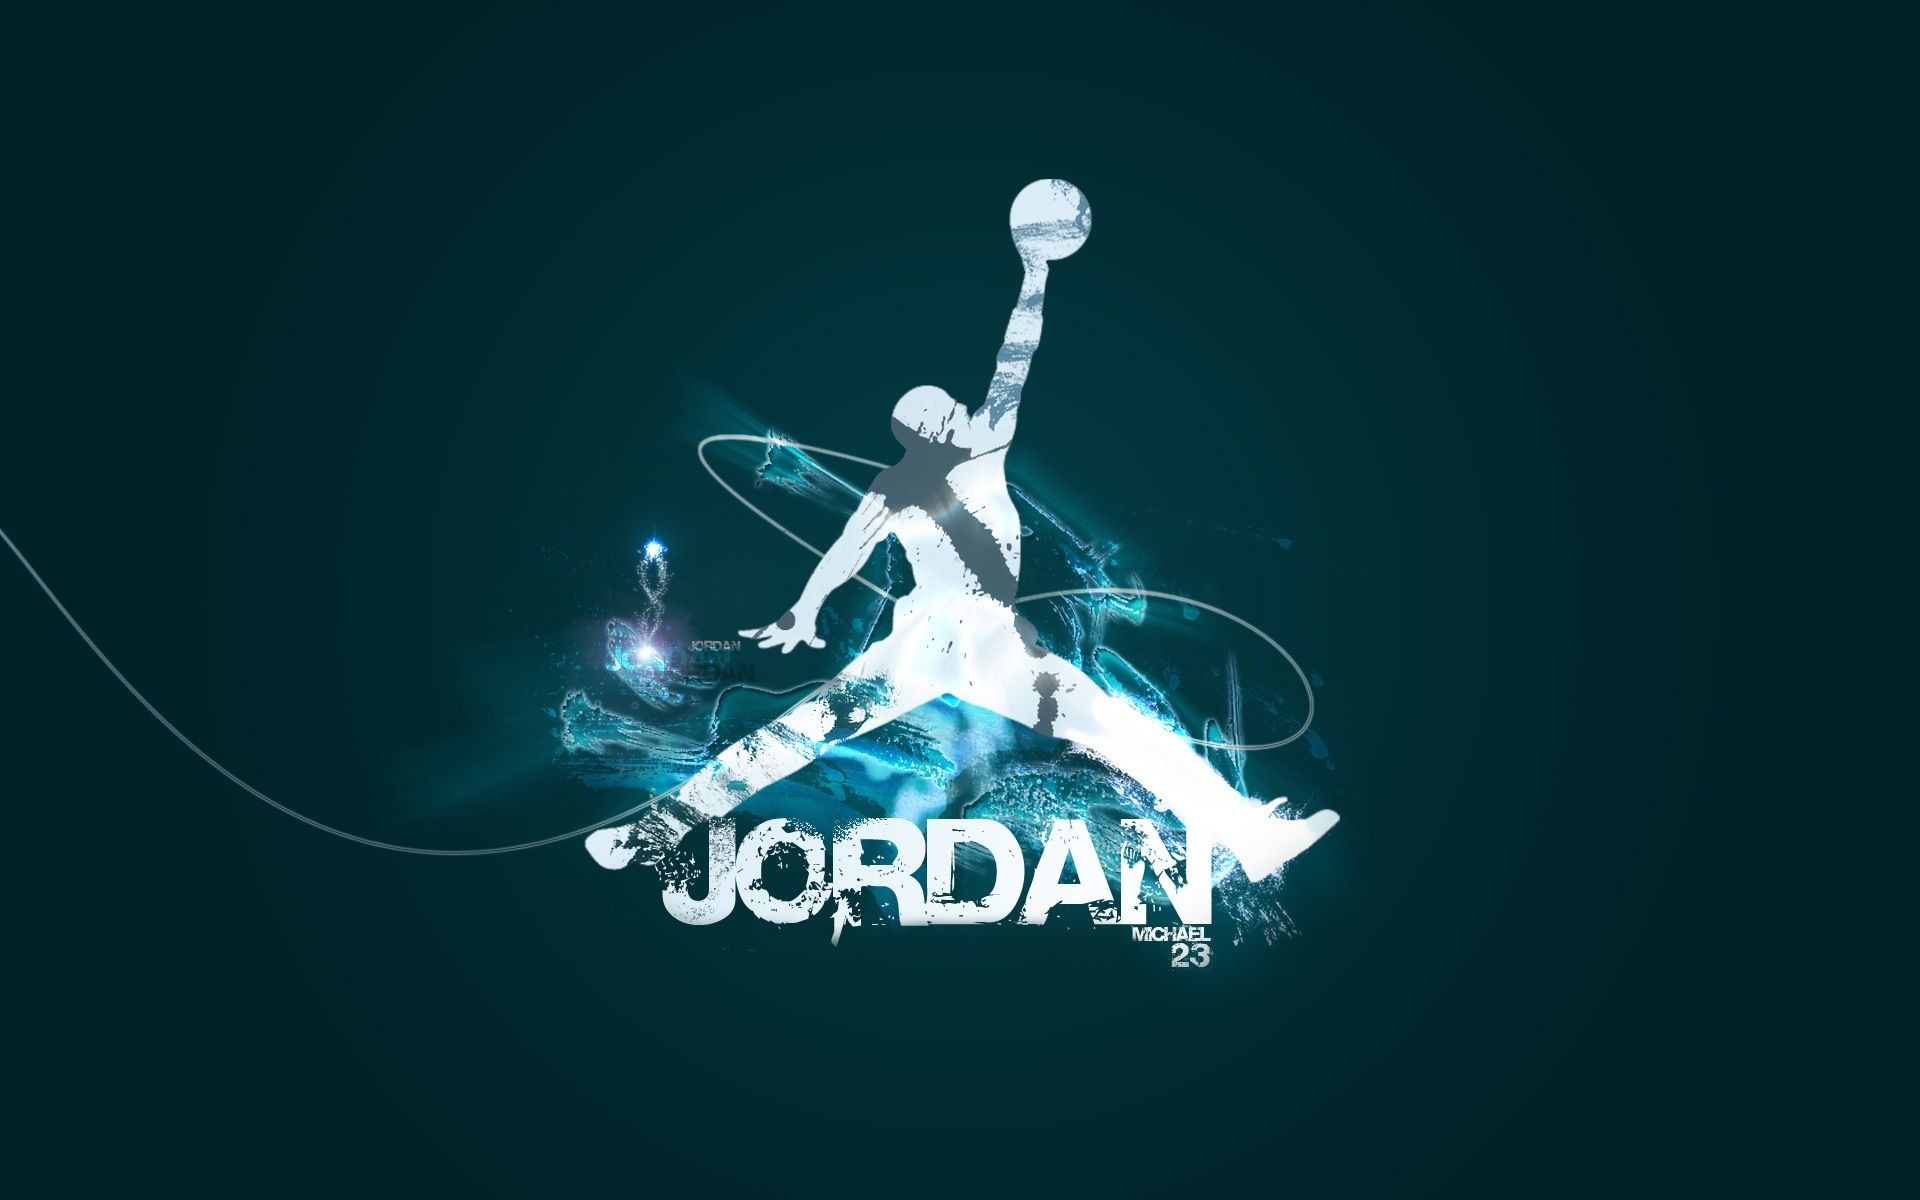 Air jordan symbol wallpaper pictures